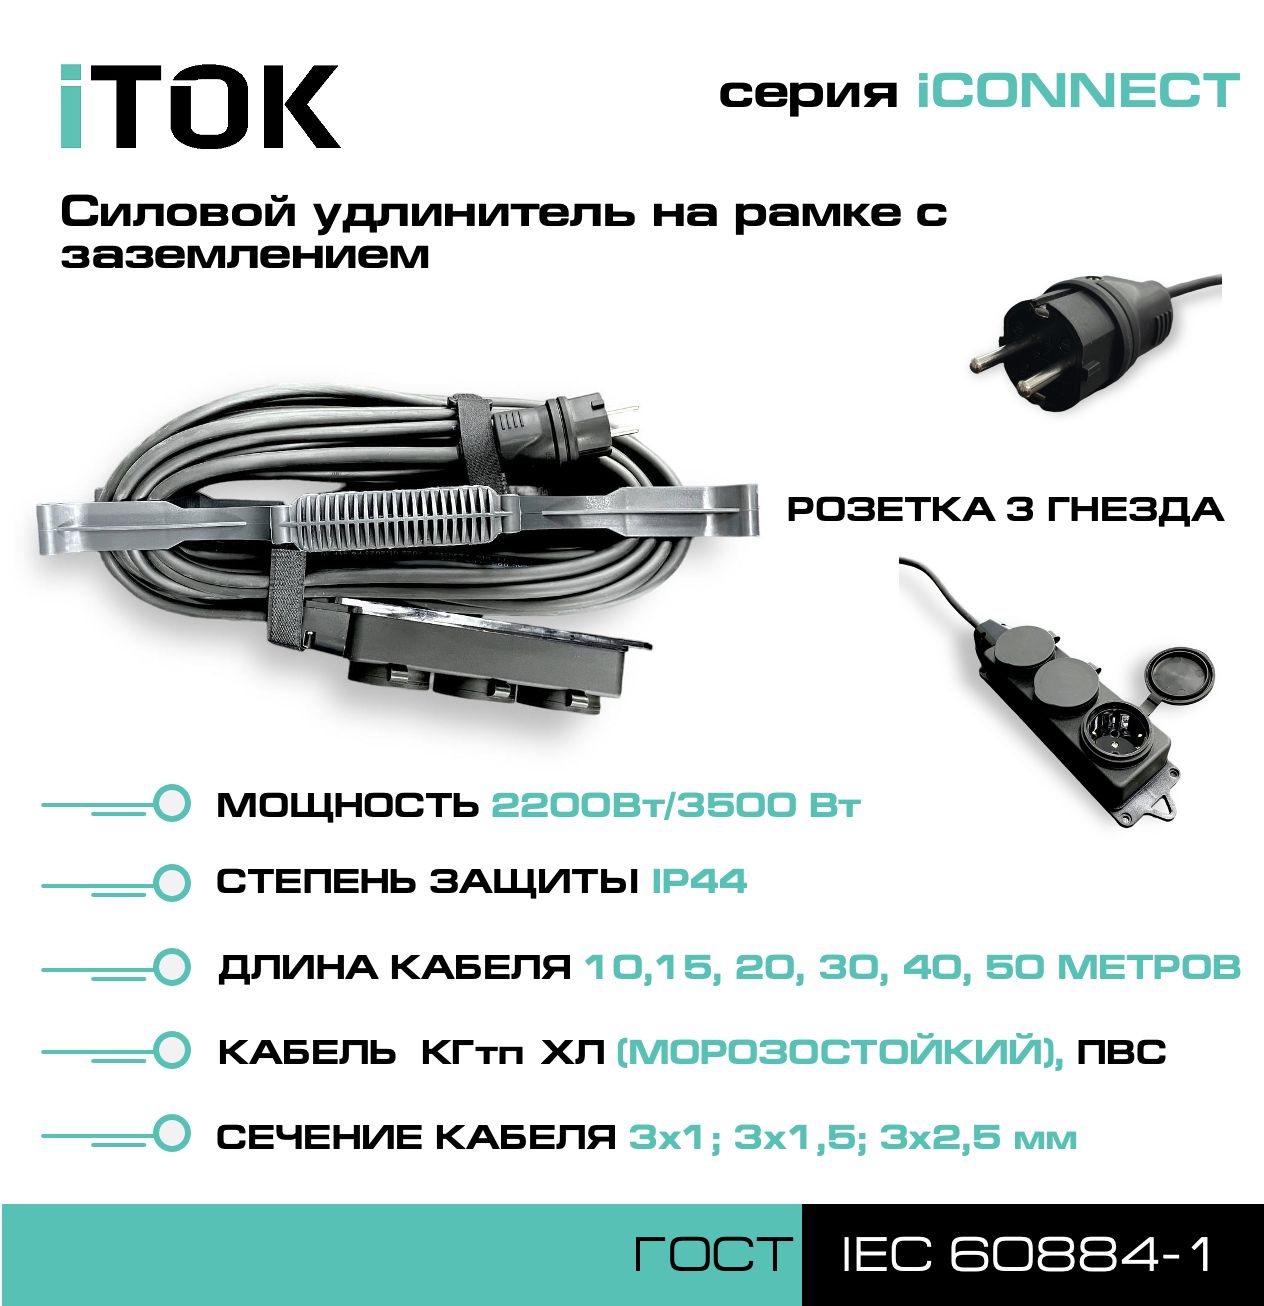 Удлинитель на рамке с заземлением серии iTOK iCONNECT ПВС 3х2,5 мм 3 гнезда IP44 15 м удлинитель navigator npe s 05 300 x 2x0 75 б з 5 гнезда 3м 71553